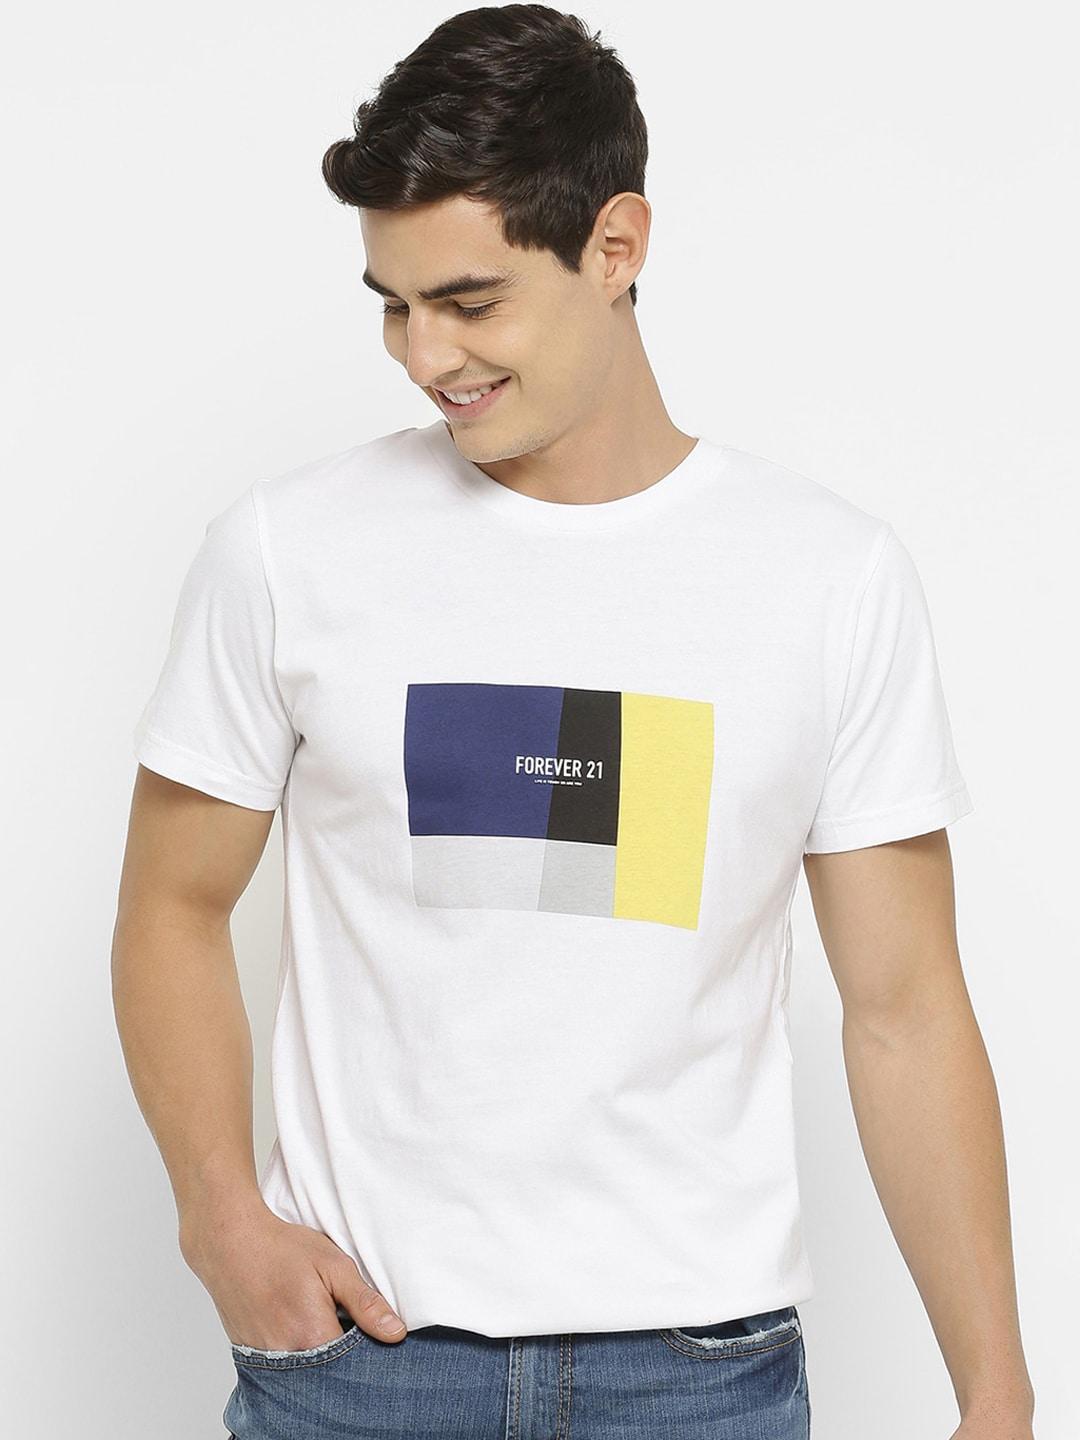 forever-21-men-white-printed-round-neck-t-shirt